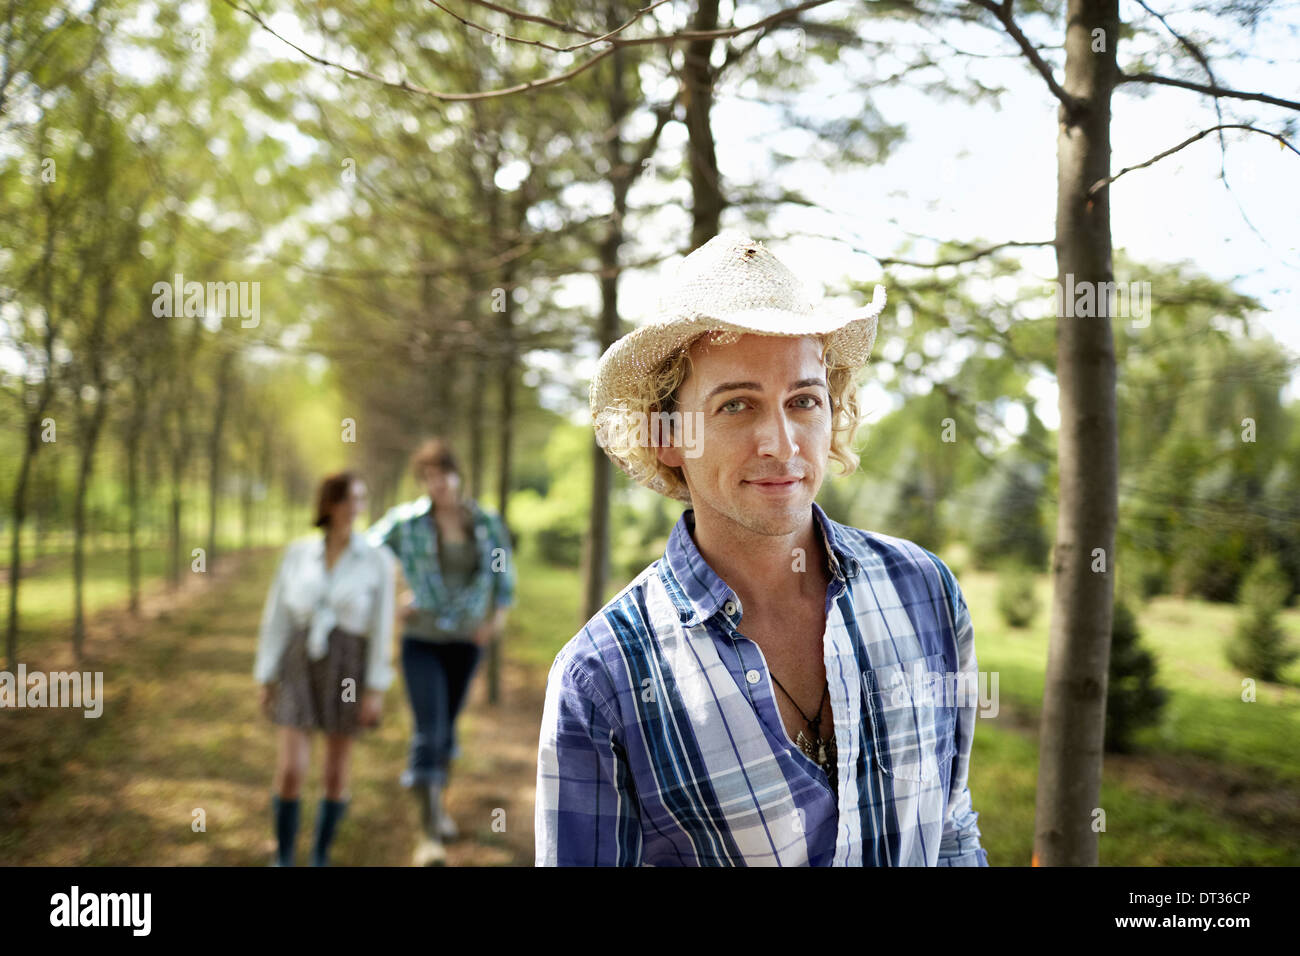 Un gruppo di amici a piedi verso il basso di un viale di alberi nel bosco Foto Stock